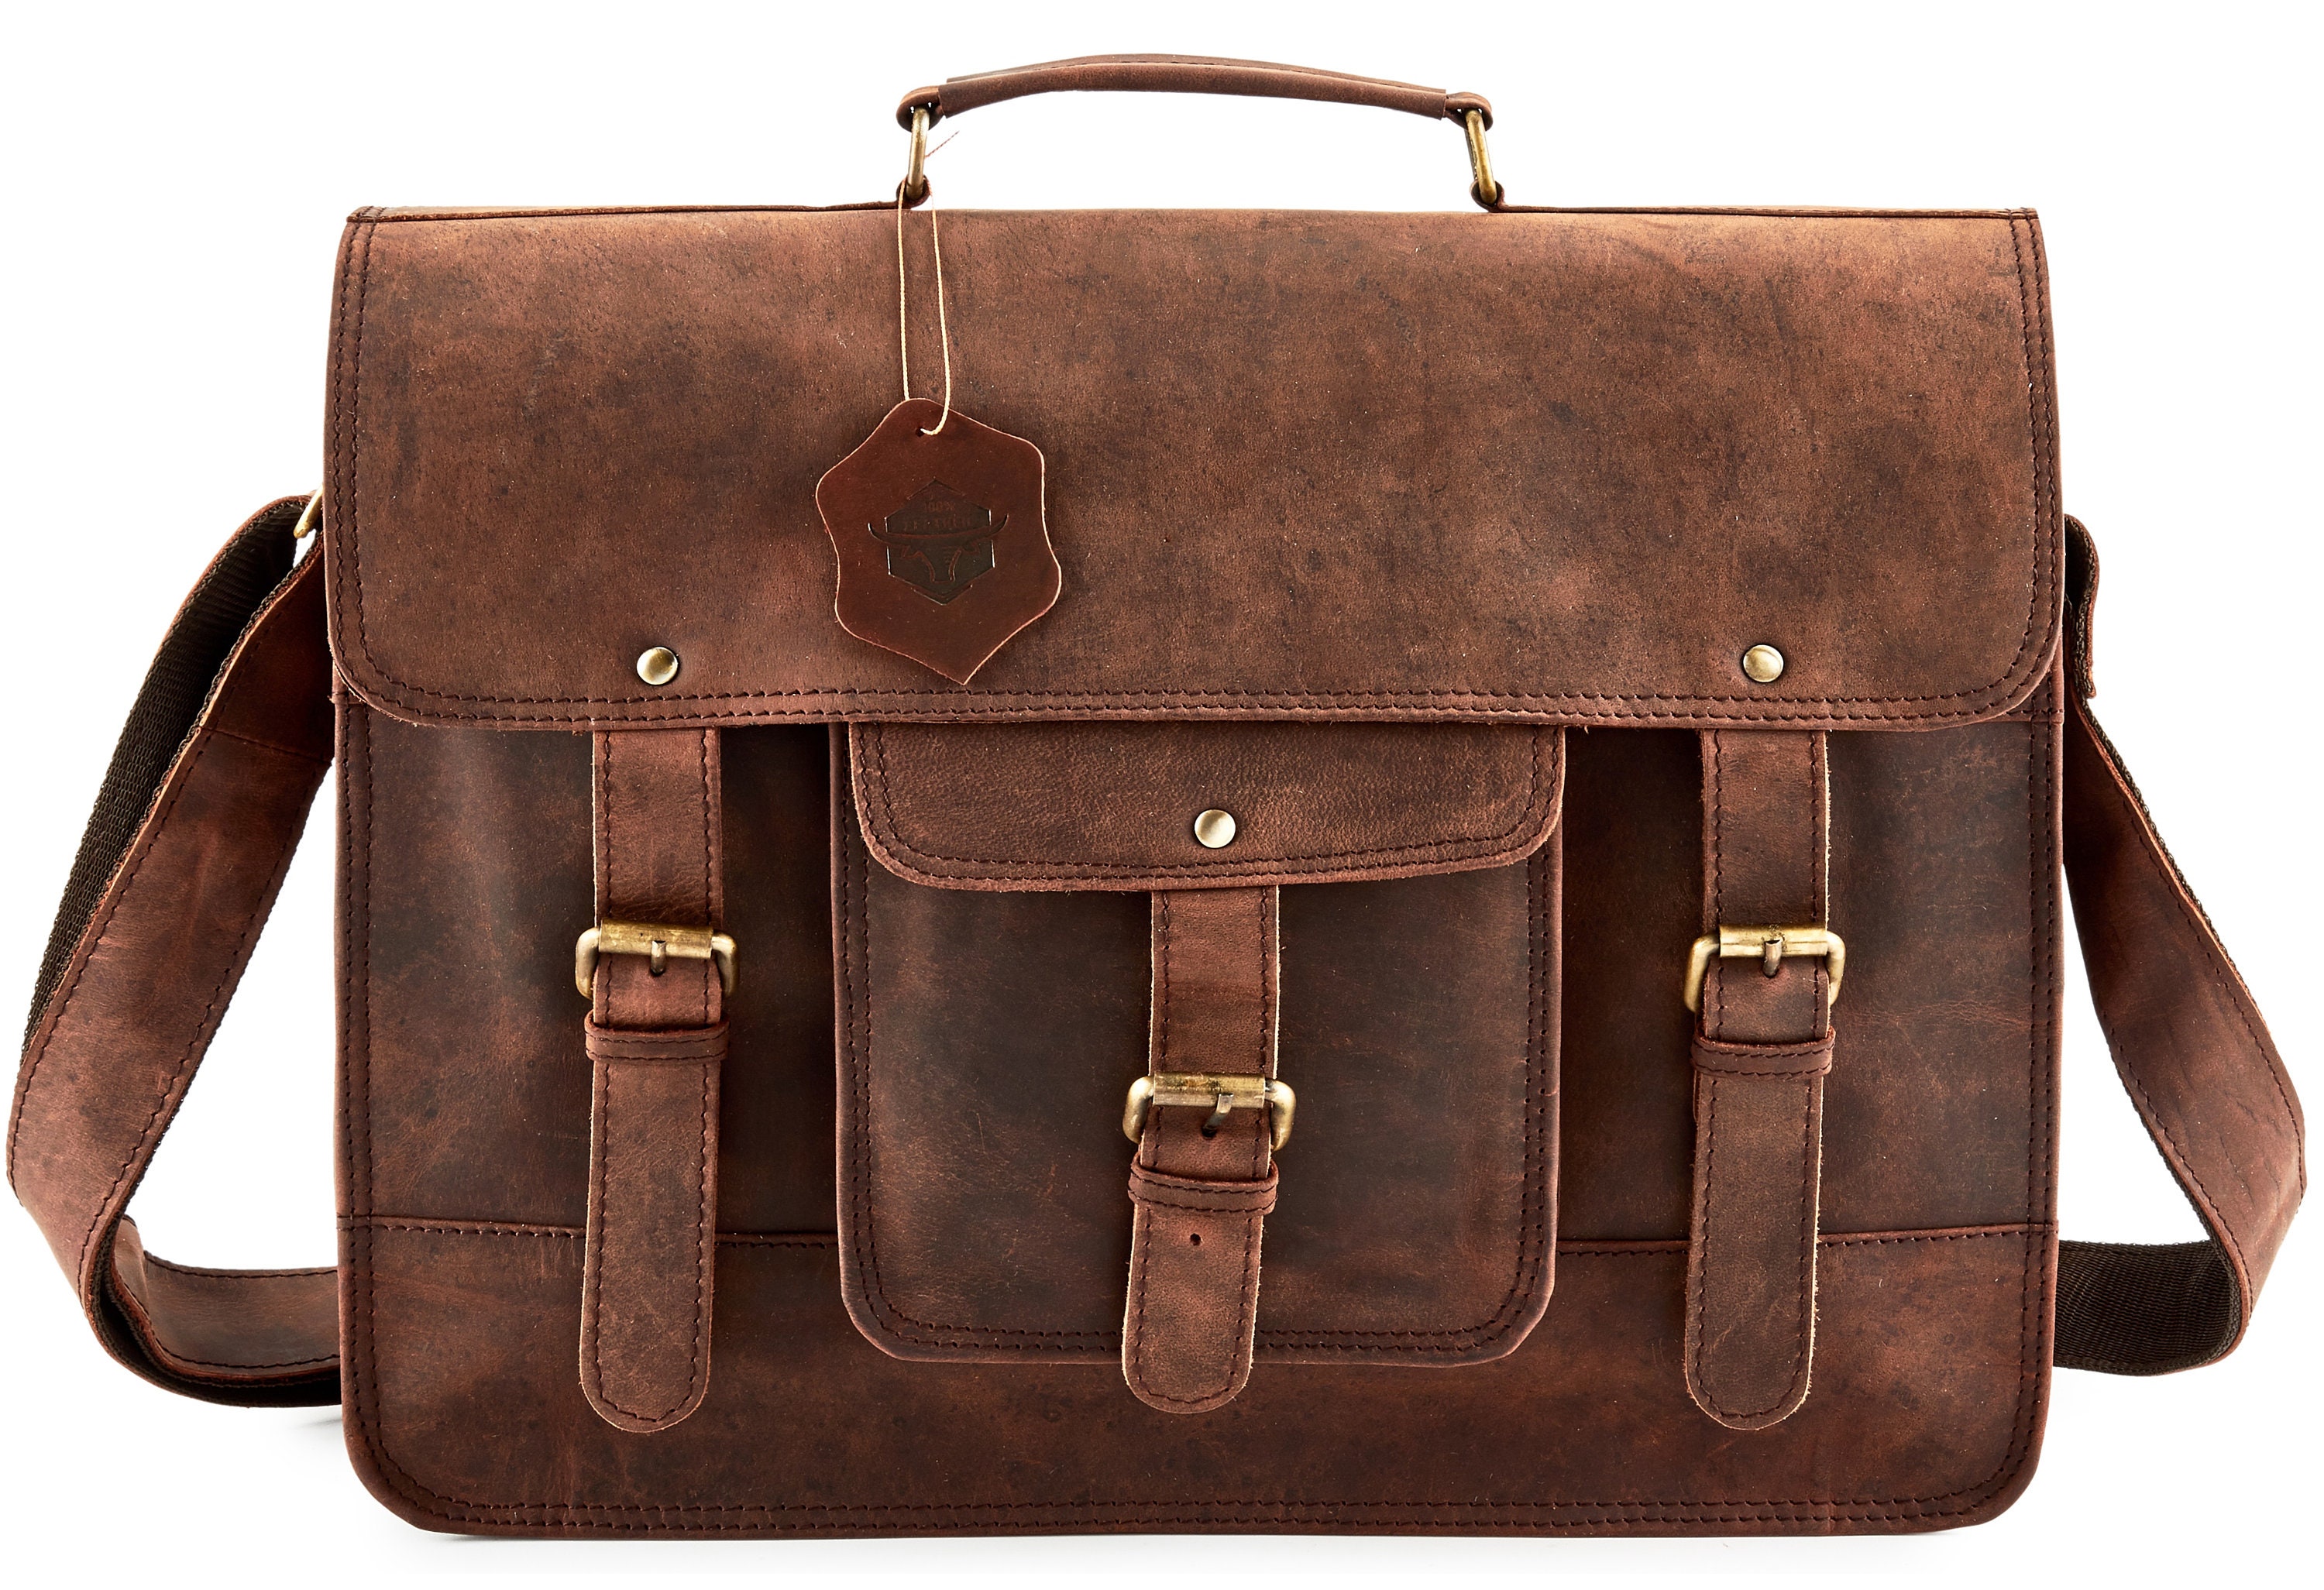 Leather bag leather messenger bag leather satchel bag laptop | Etsy